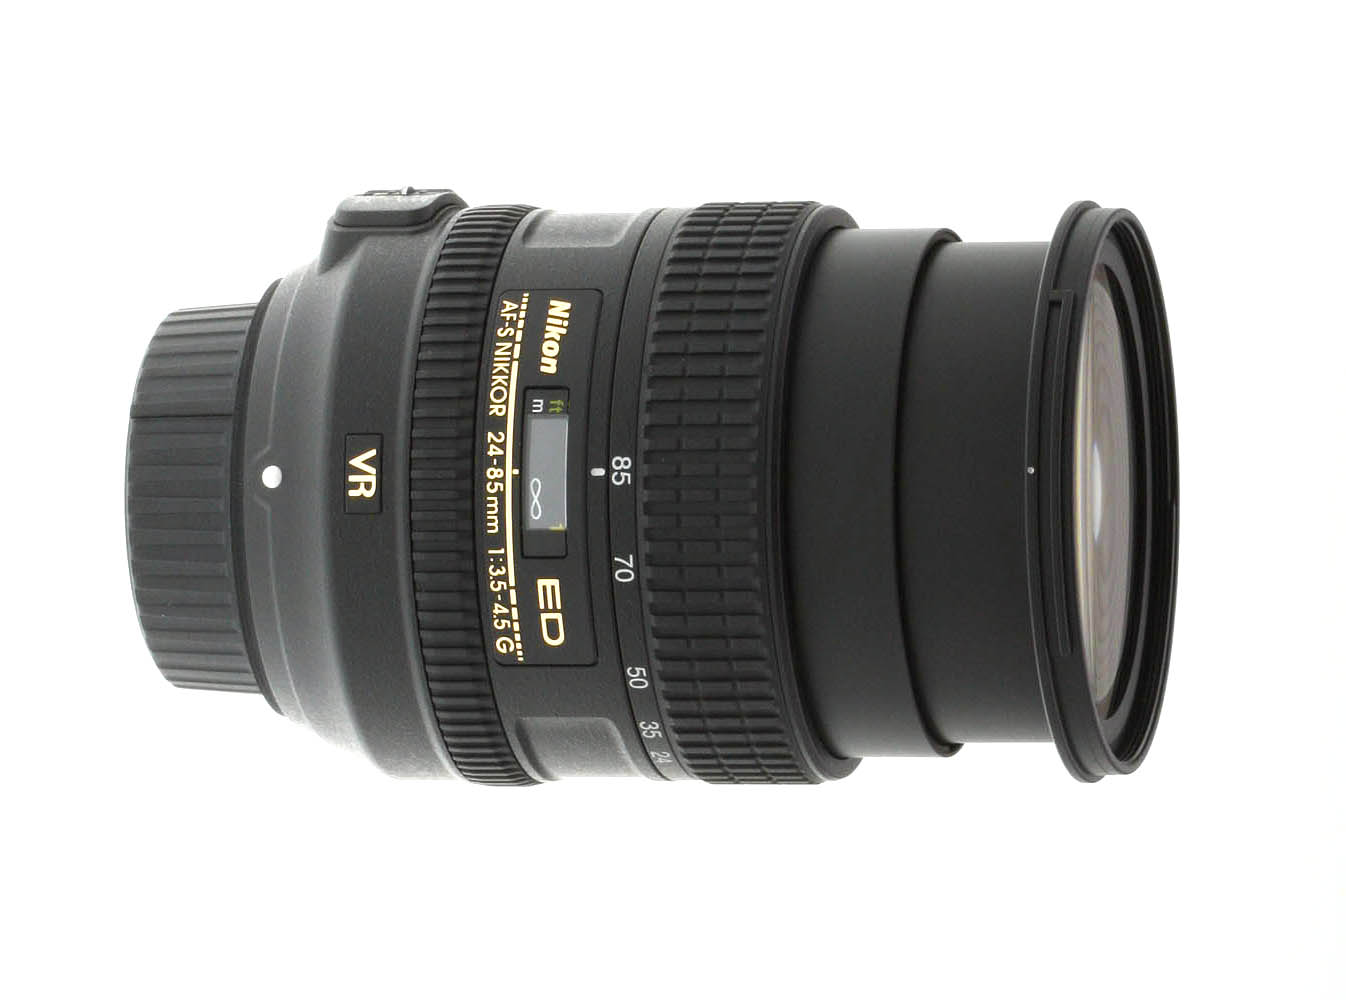 Nikon 24-85mm f/3.5-4.5G ED VR AF-S Nikkor Review